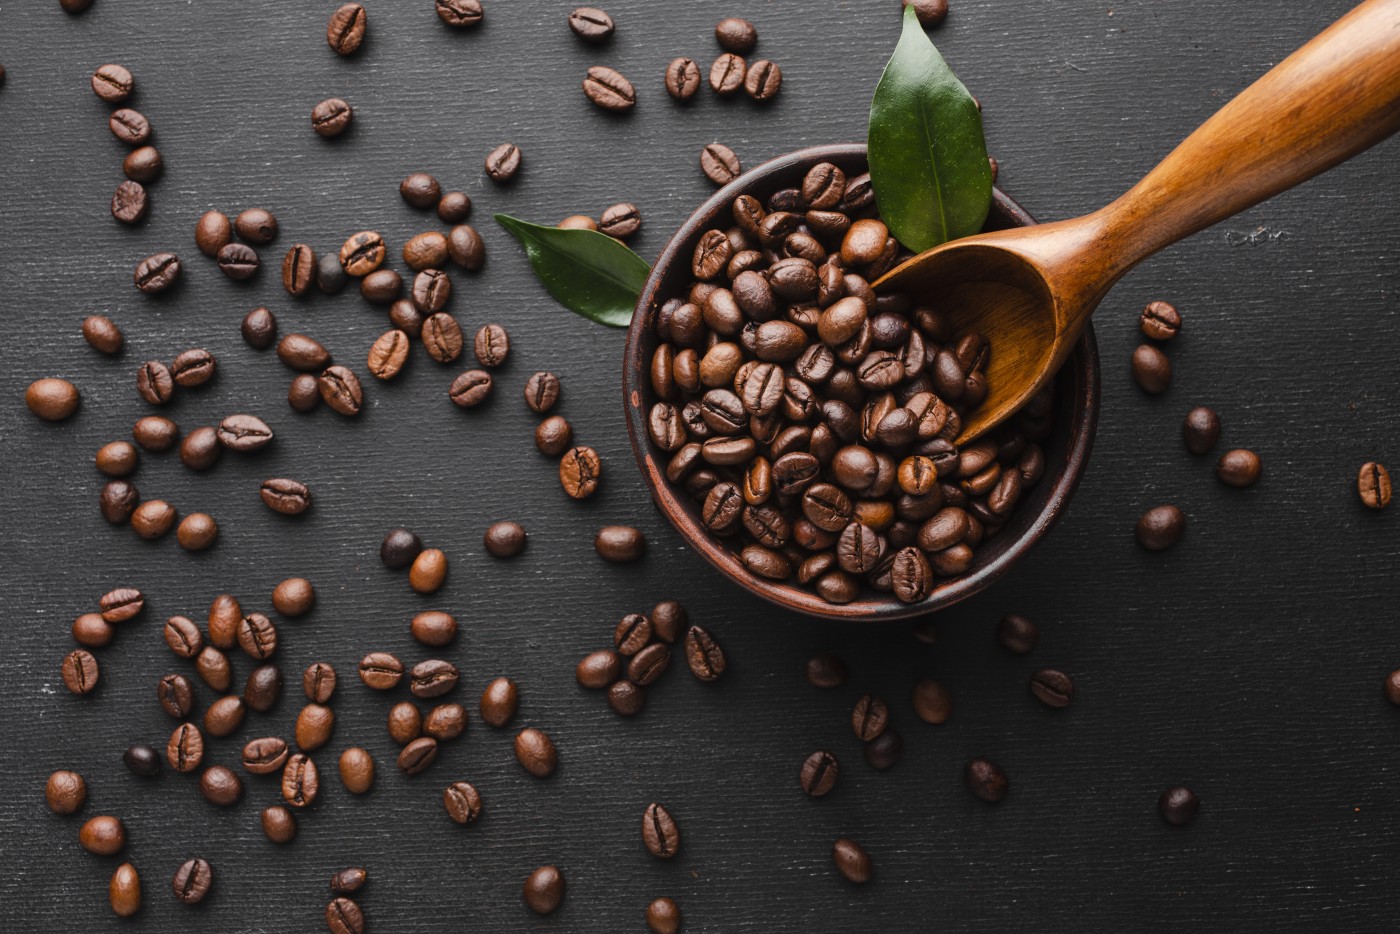 多米体育咖啡消费体验再升级瑞幸咖啡完成鸿蒙原生应用核心功能开发